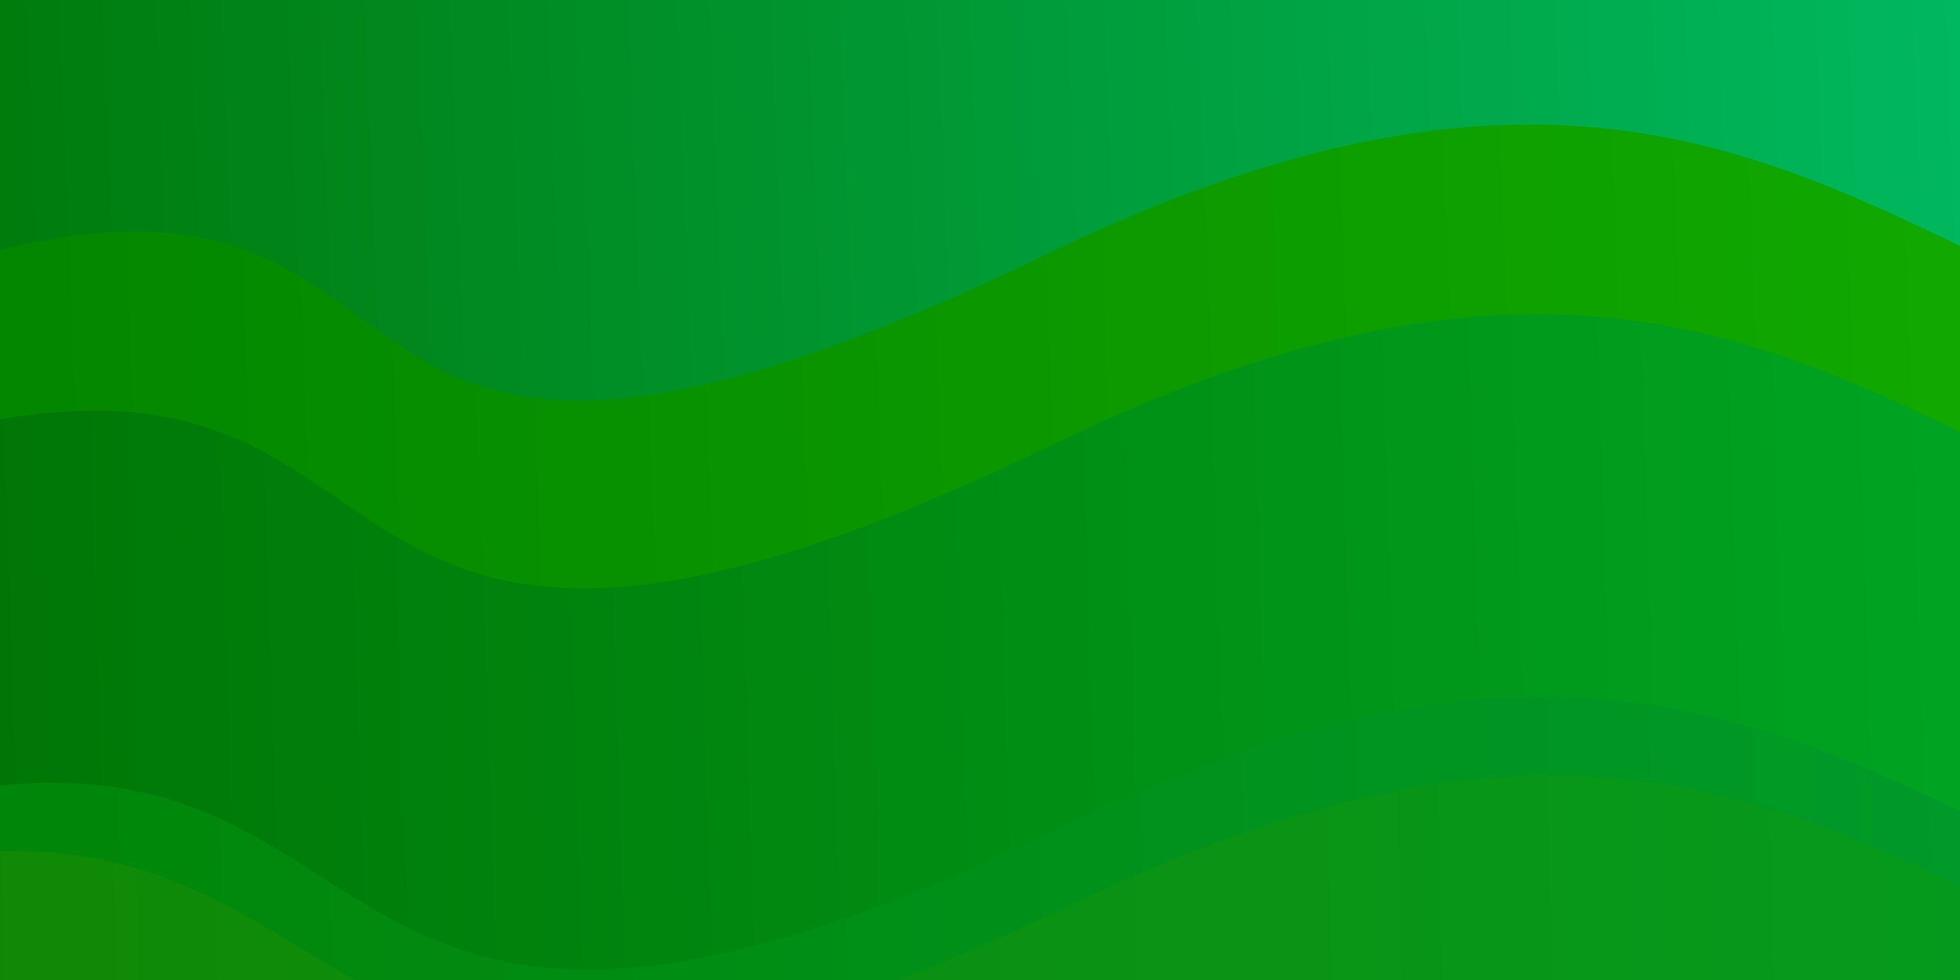 ljusblå, grön vektorstruktur med kurvor. vektor